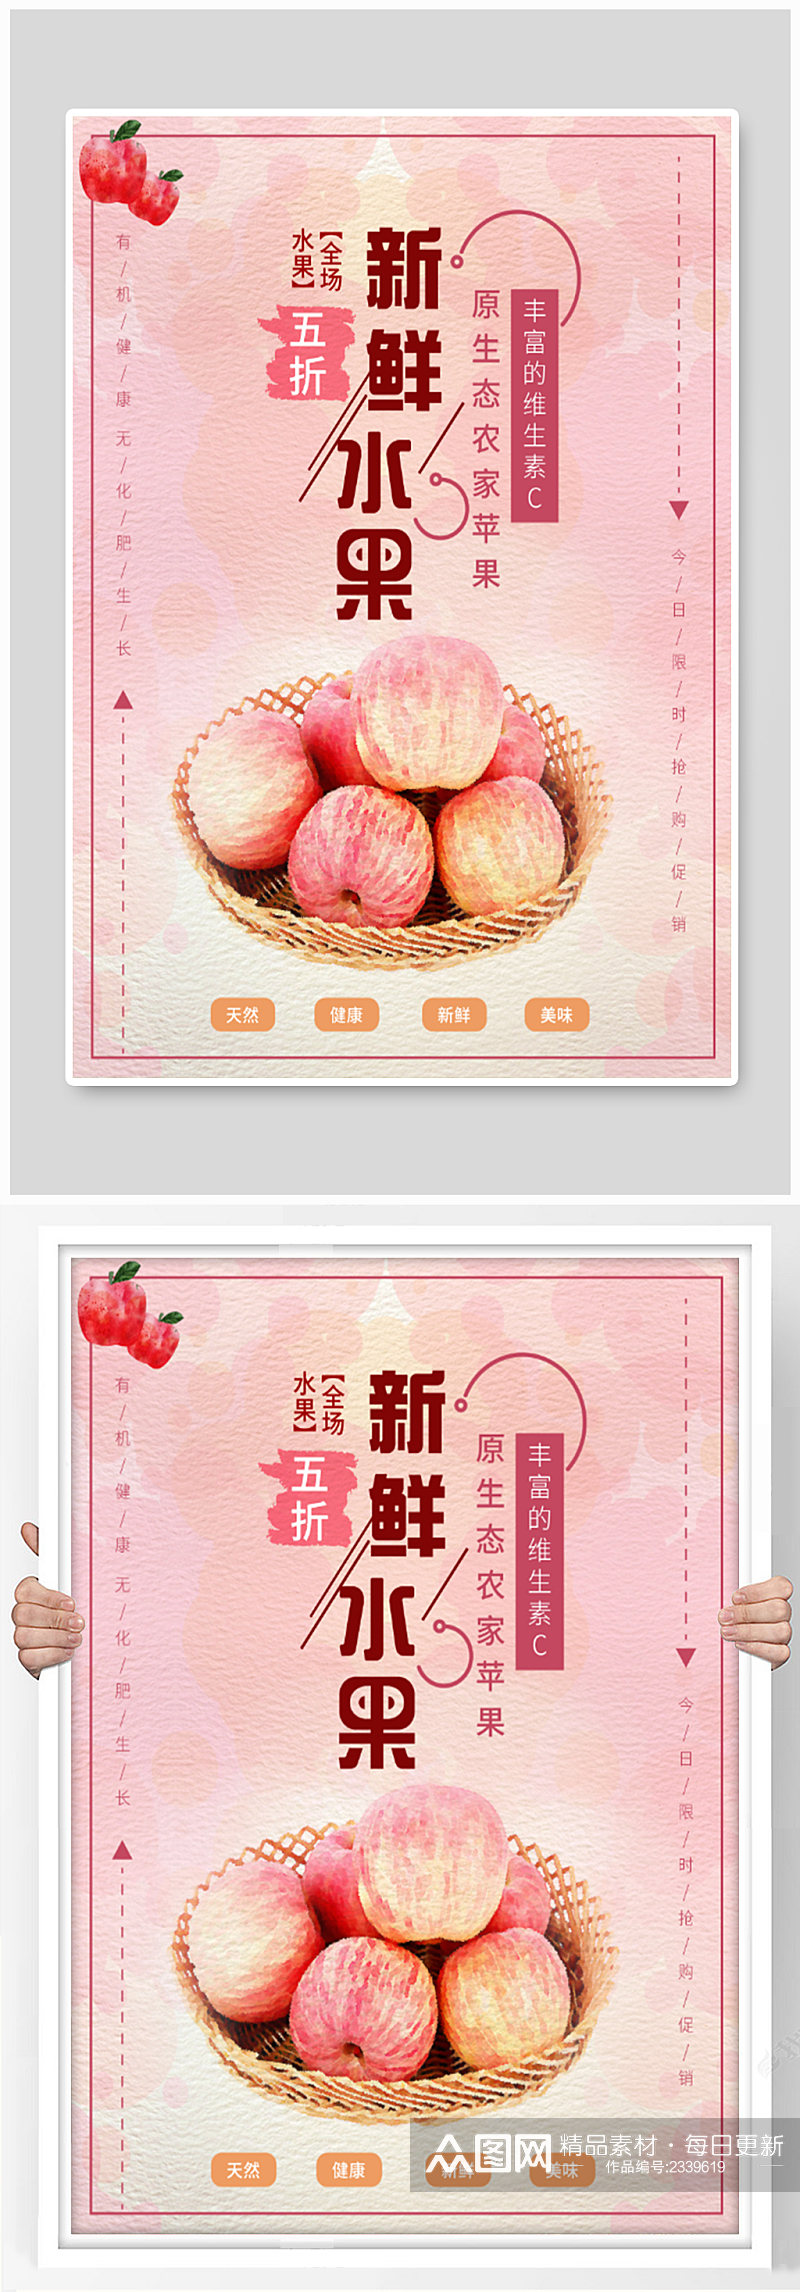 新鲜水果红苹果海报素材